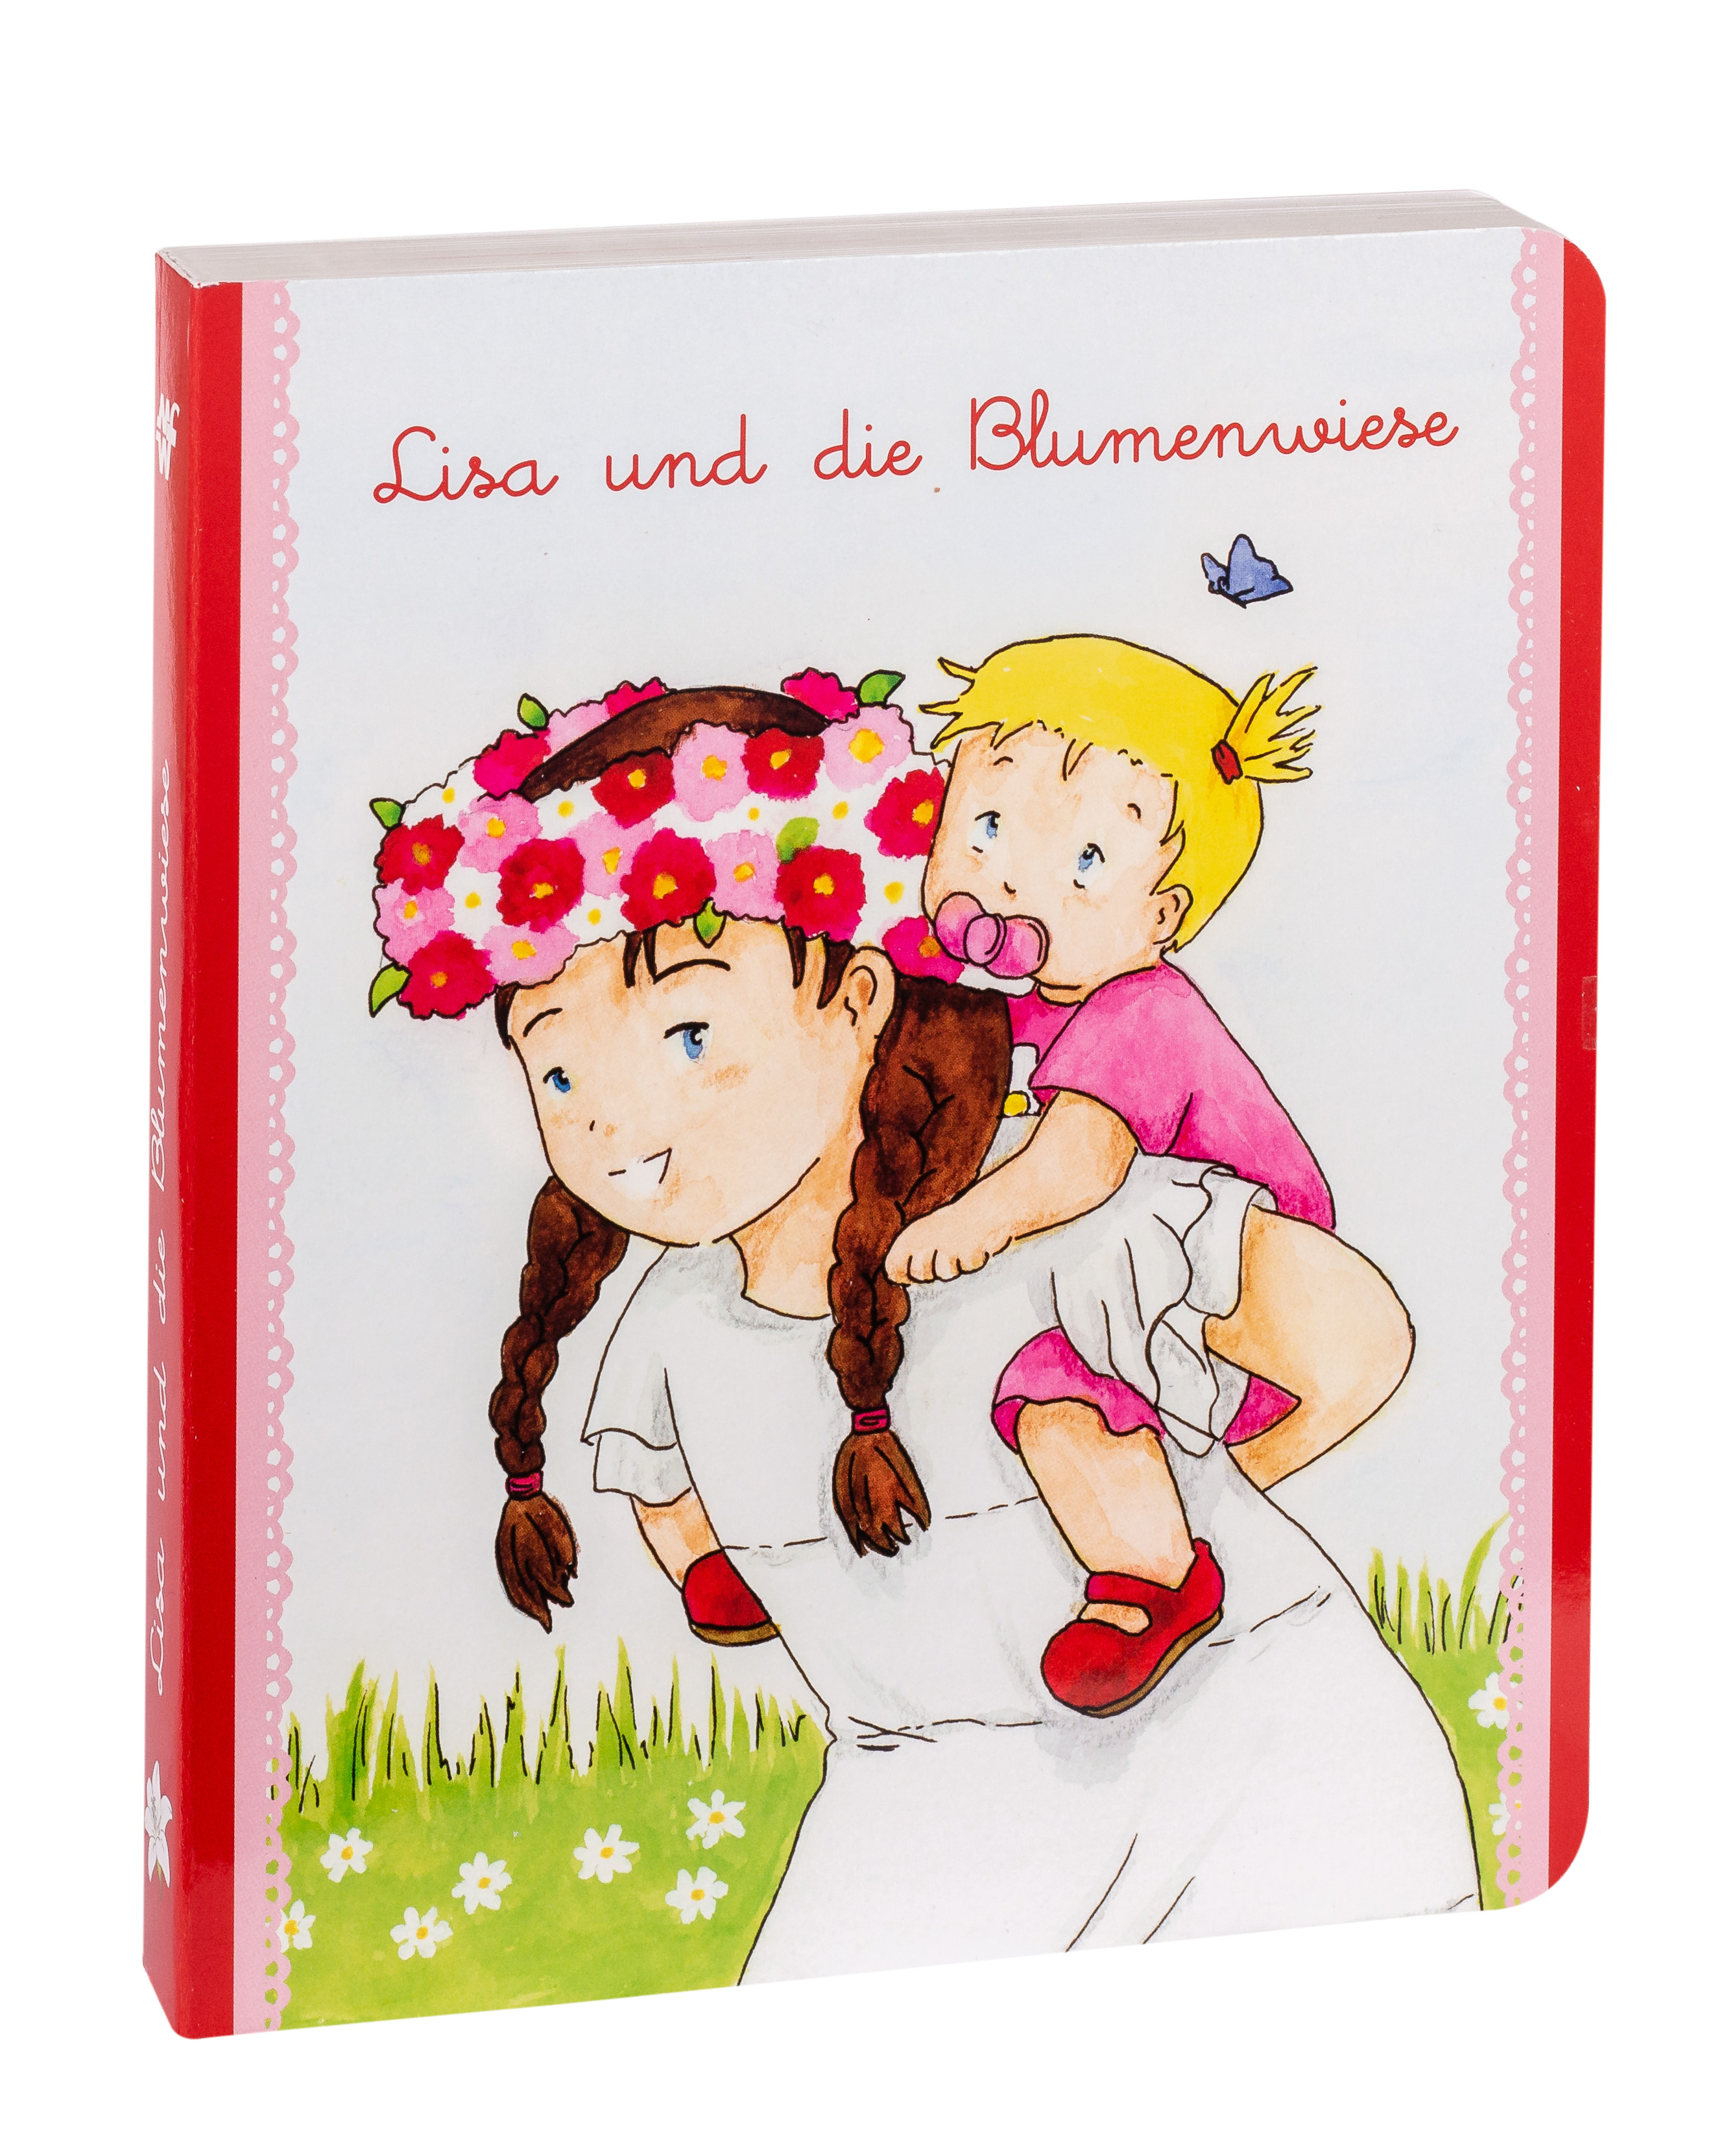 Pappbuch - Lisa und die Blumenwiese